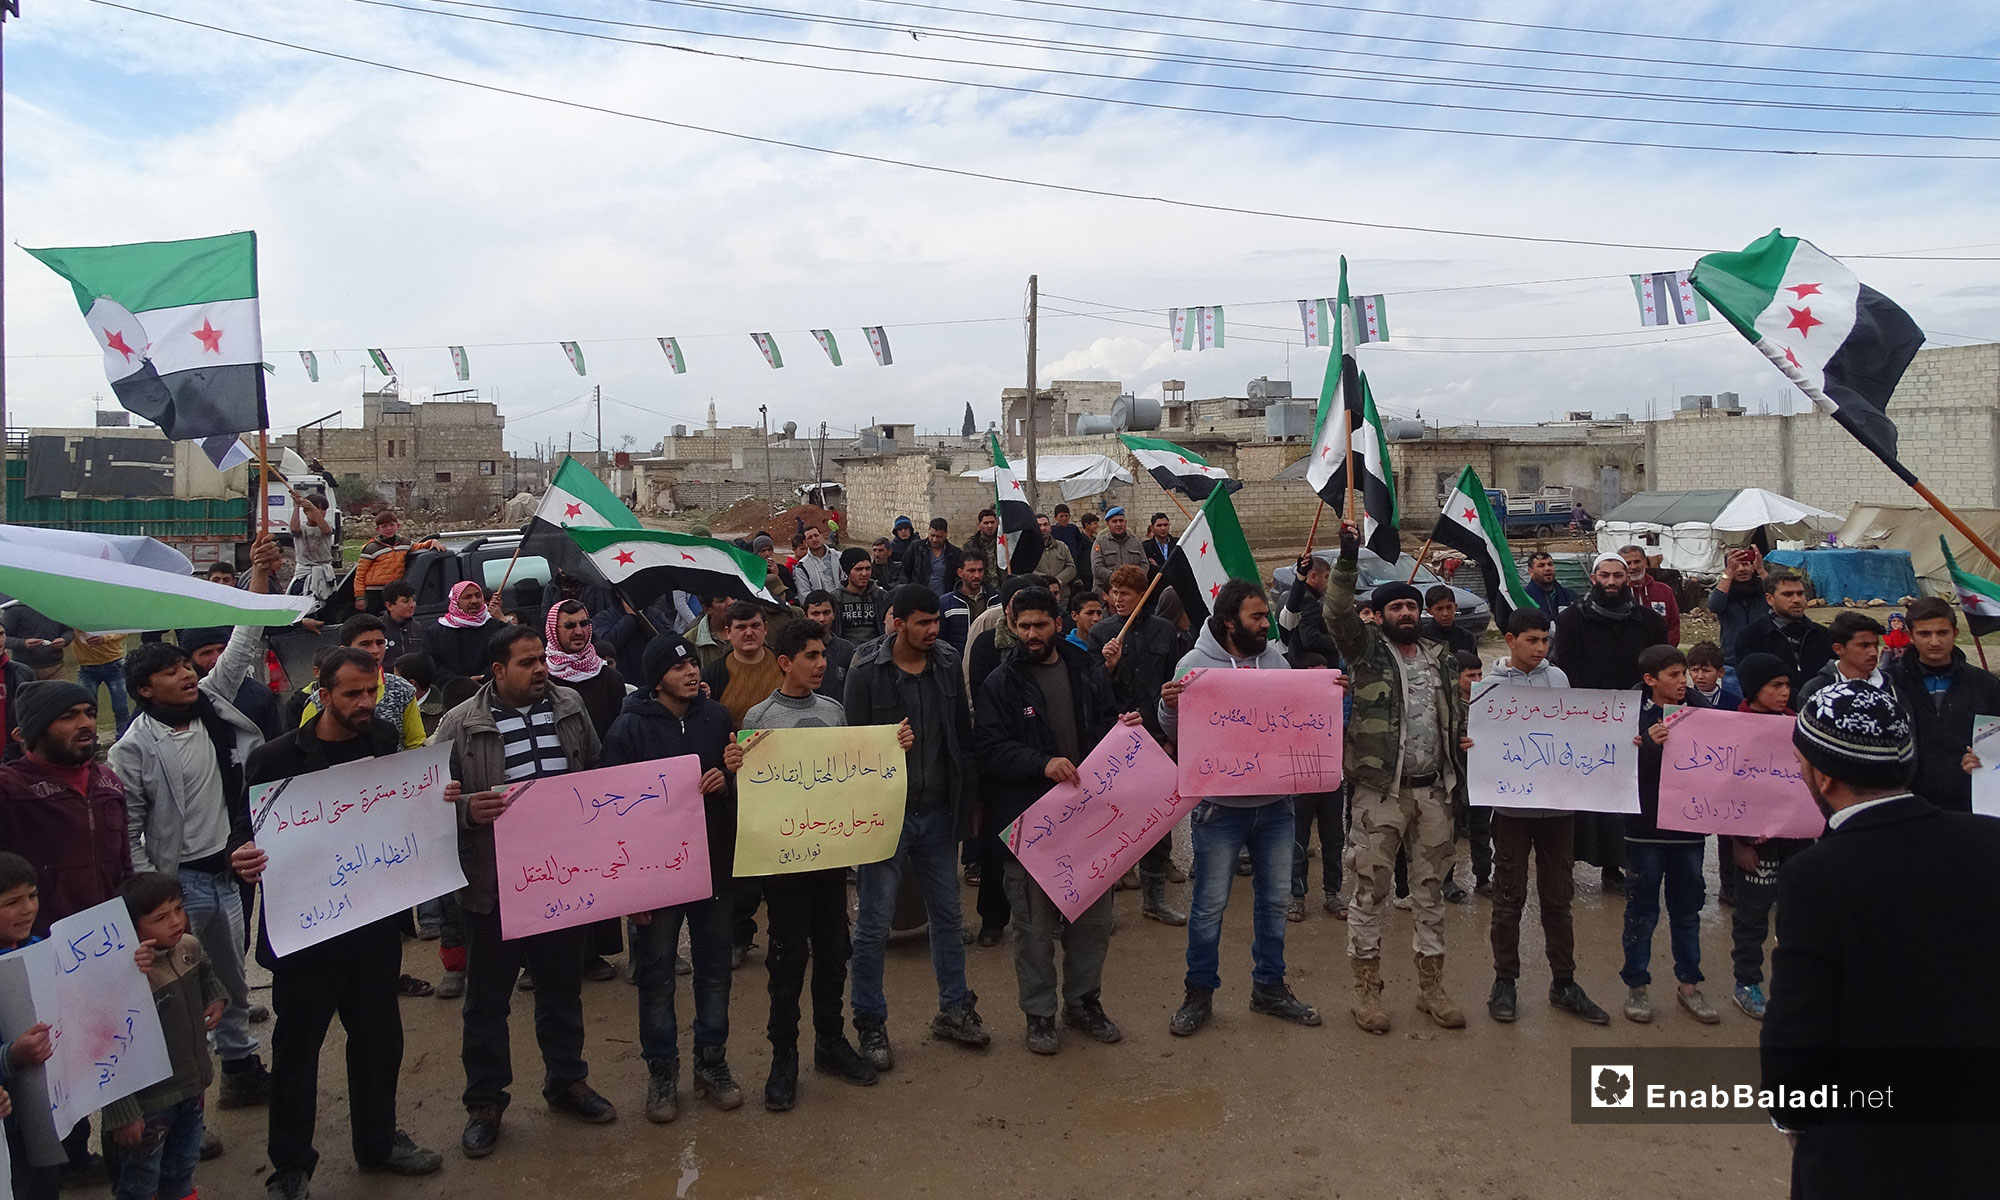 في الذكرى الثامنة للثورة السورية مظاهرة في بلدة دابق بريف حلب الشمالي - 15 من آذار 2019 (عنب بلدي)